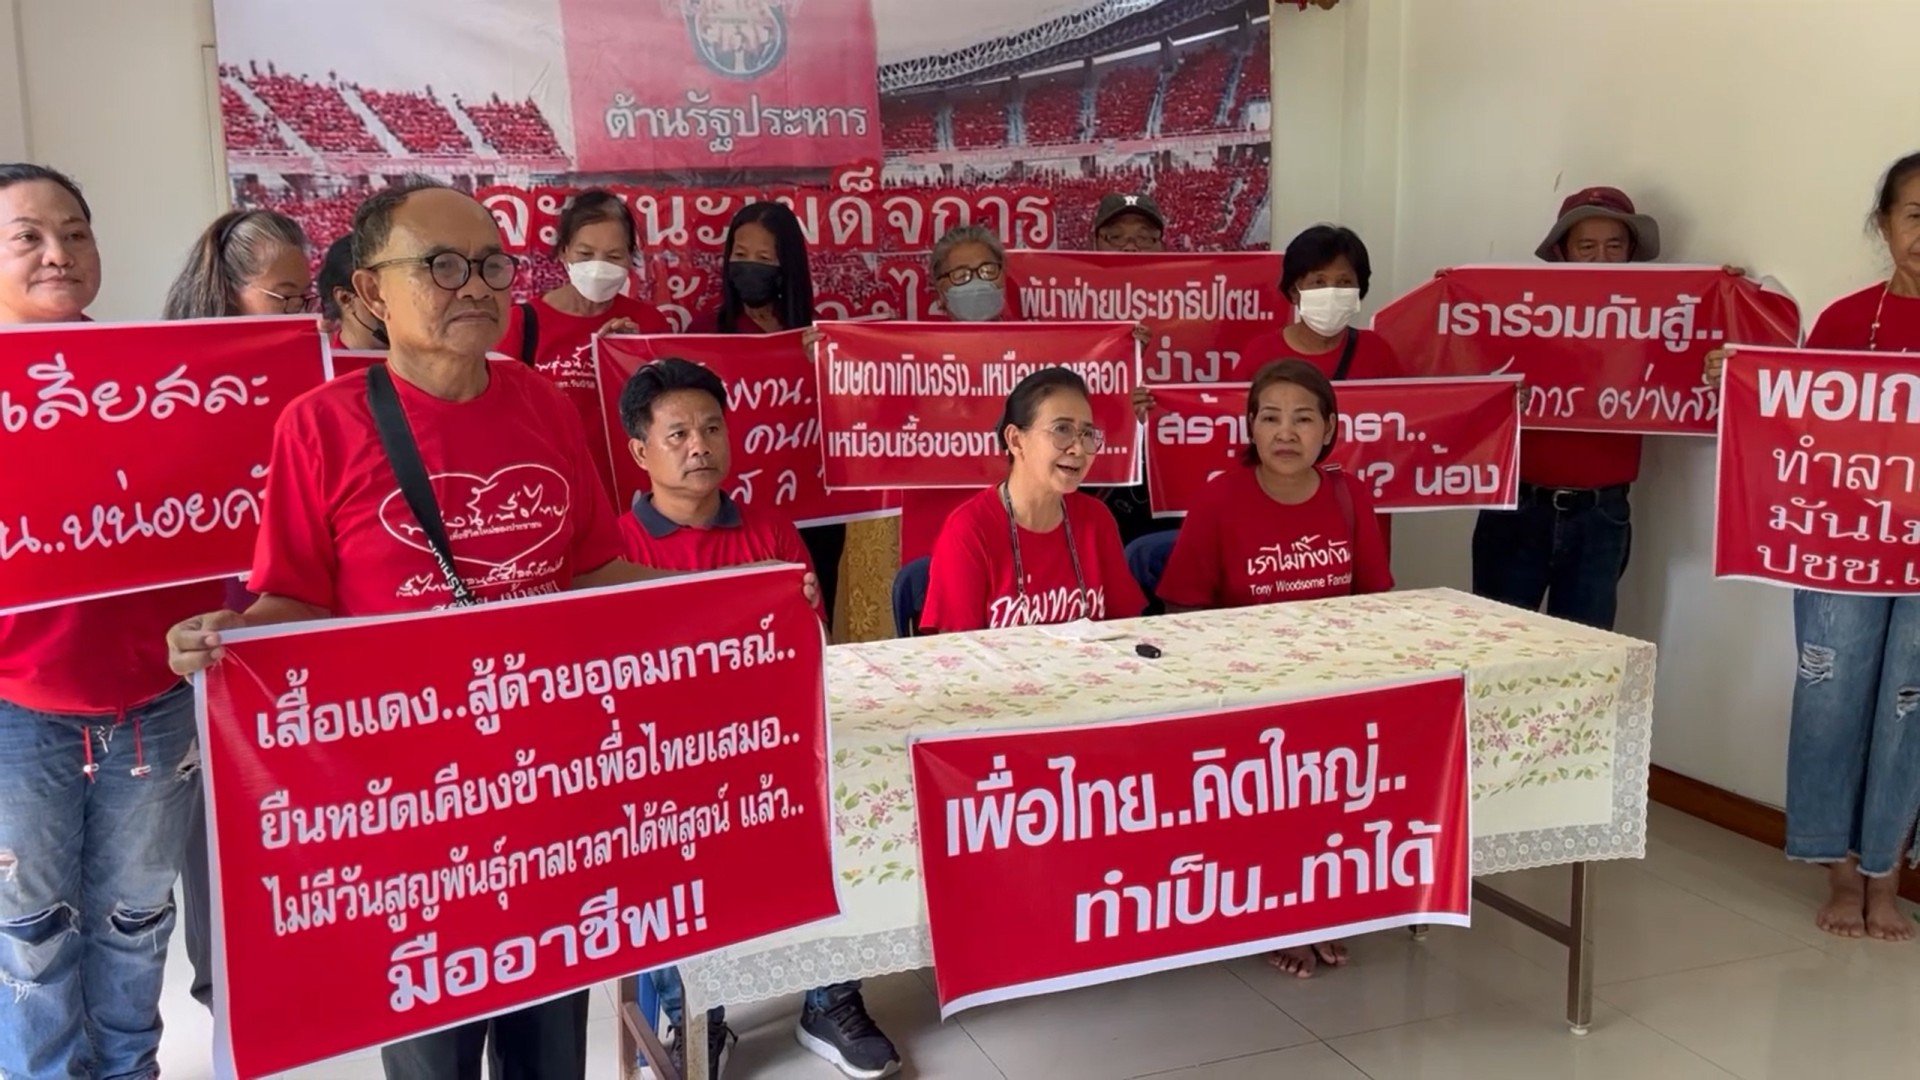 “คนเสื้อแดงอีสาน” ระบุเพื่อไทยยอมถอย 1 ก้าว ถือว่าเพียงพอแล้ว ประเทศต้องการรัฐบาลมืออาชีพ